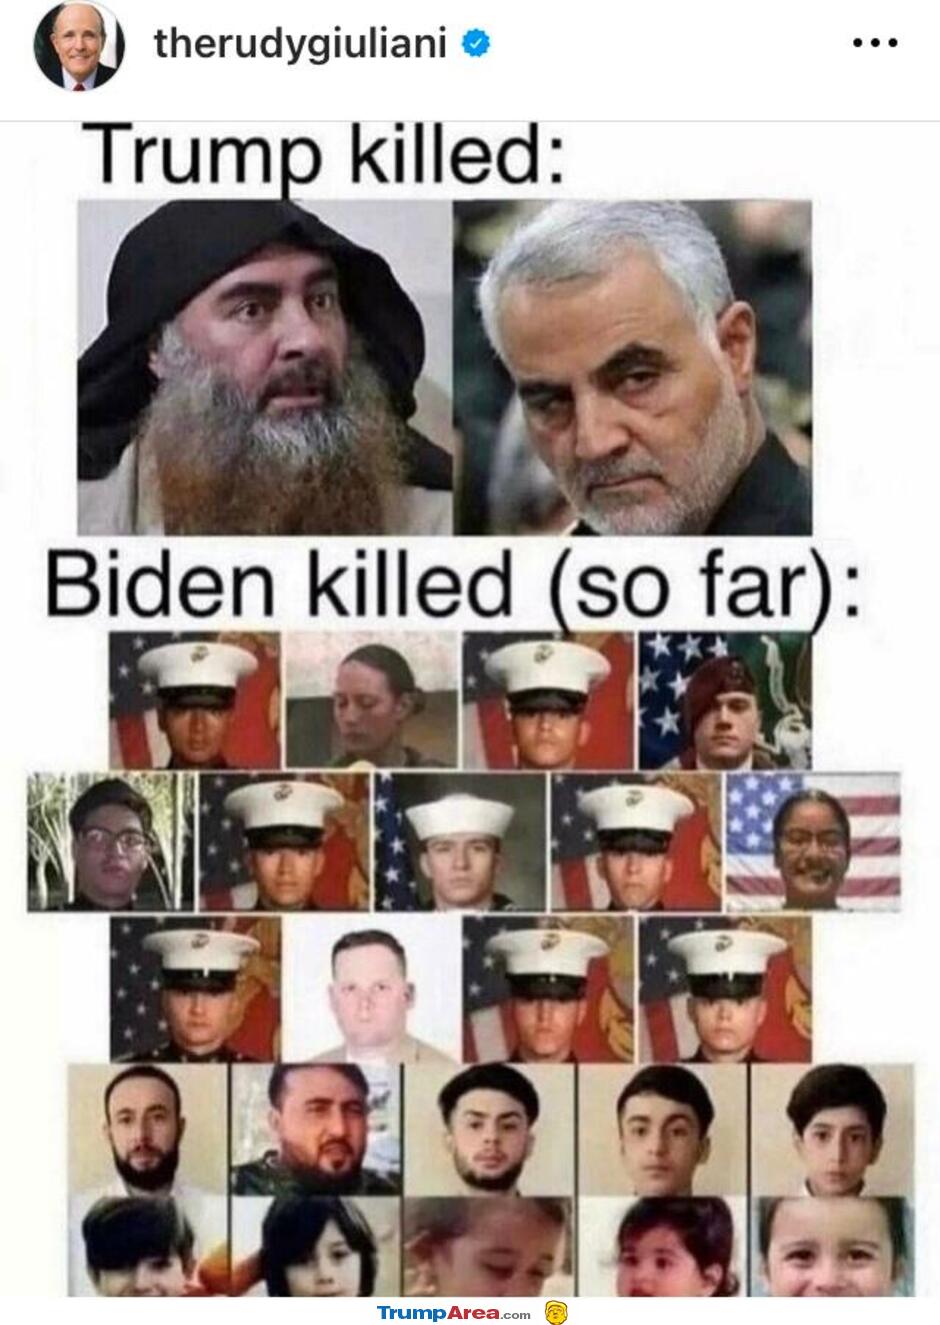 Who Killed Who